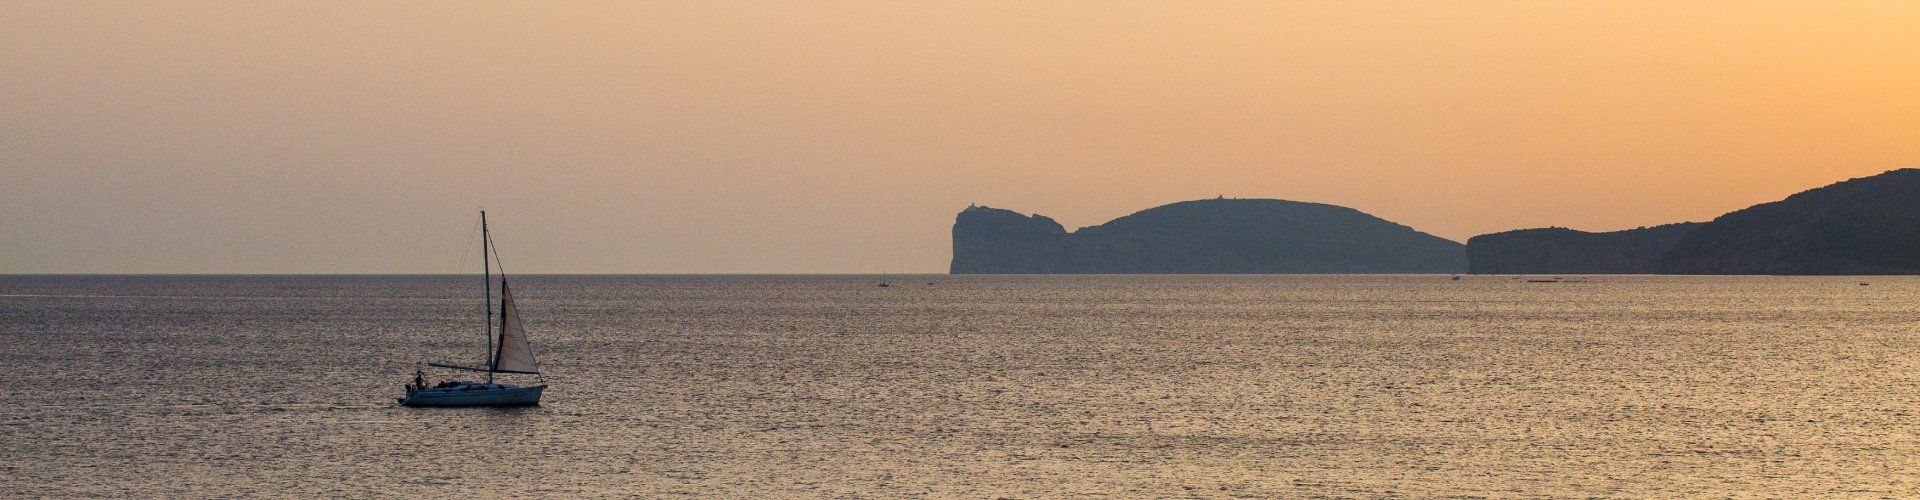 Das Meer bei Alghero beim Sonnenuntergang mit einem Segelboot und der Silhouette vom Capo Caccia